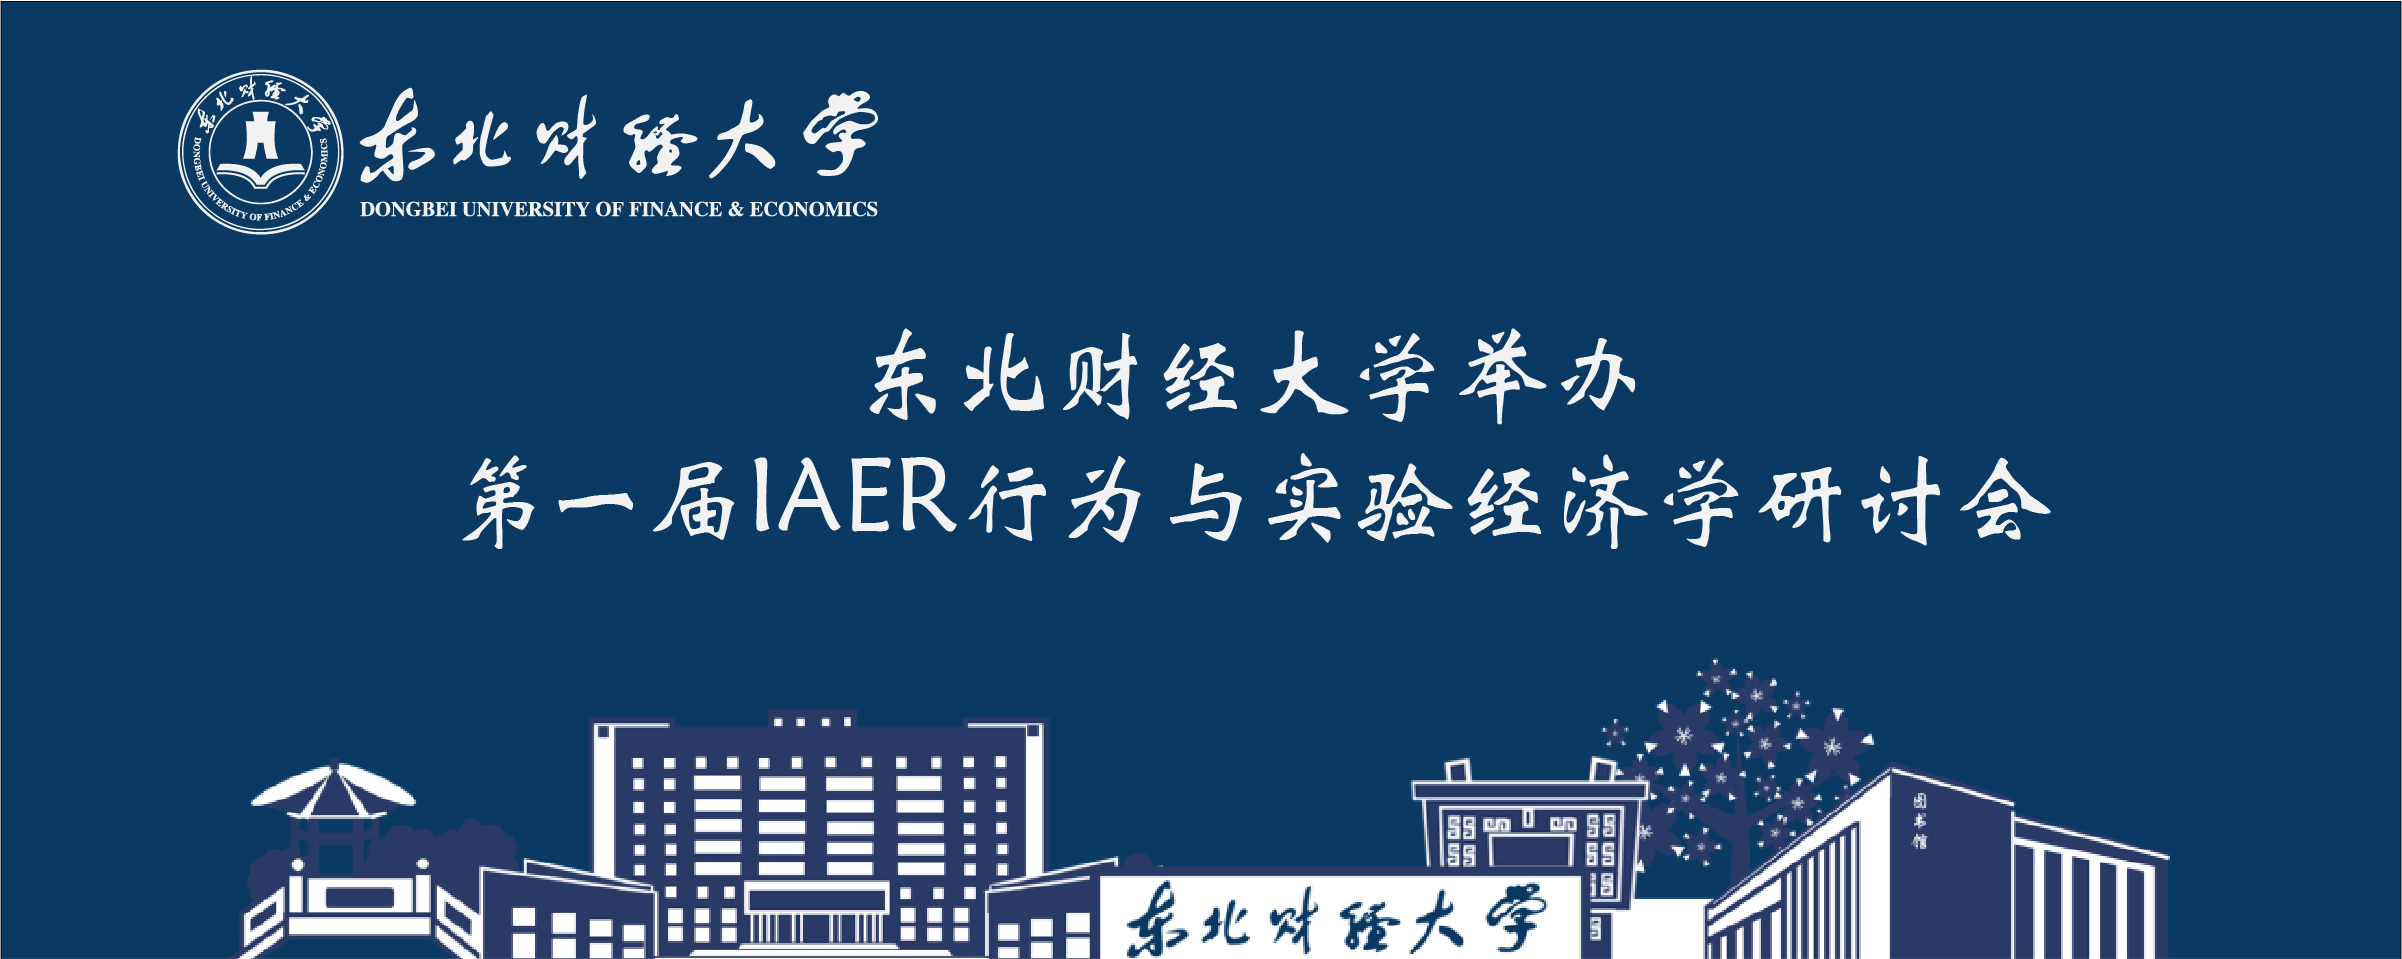 东北财经大学举办第一届IAER行为与实验经济学研讨会